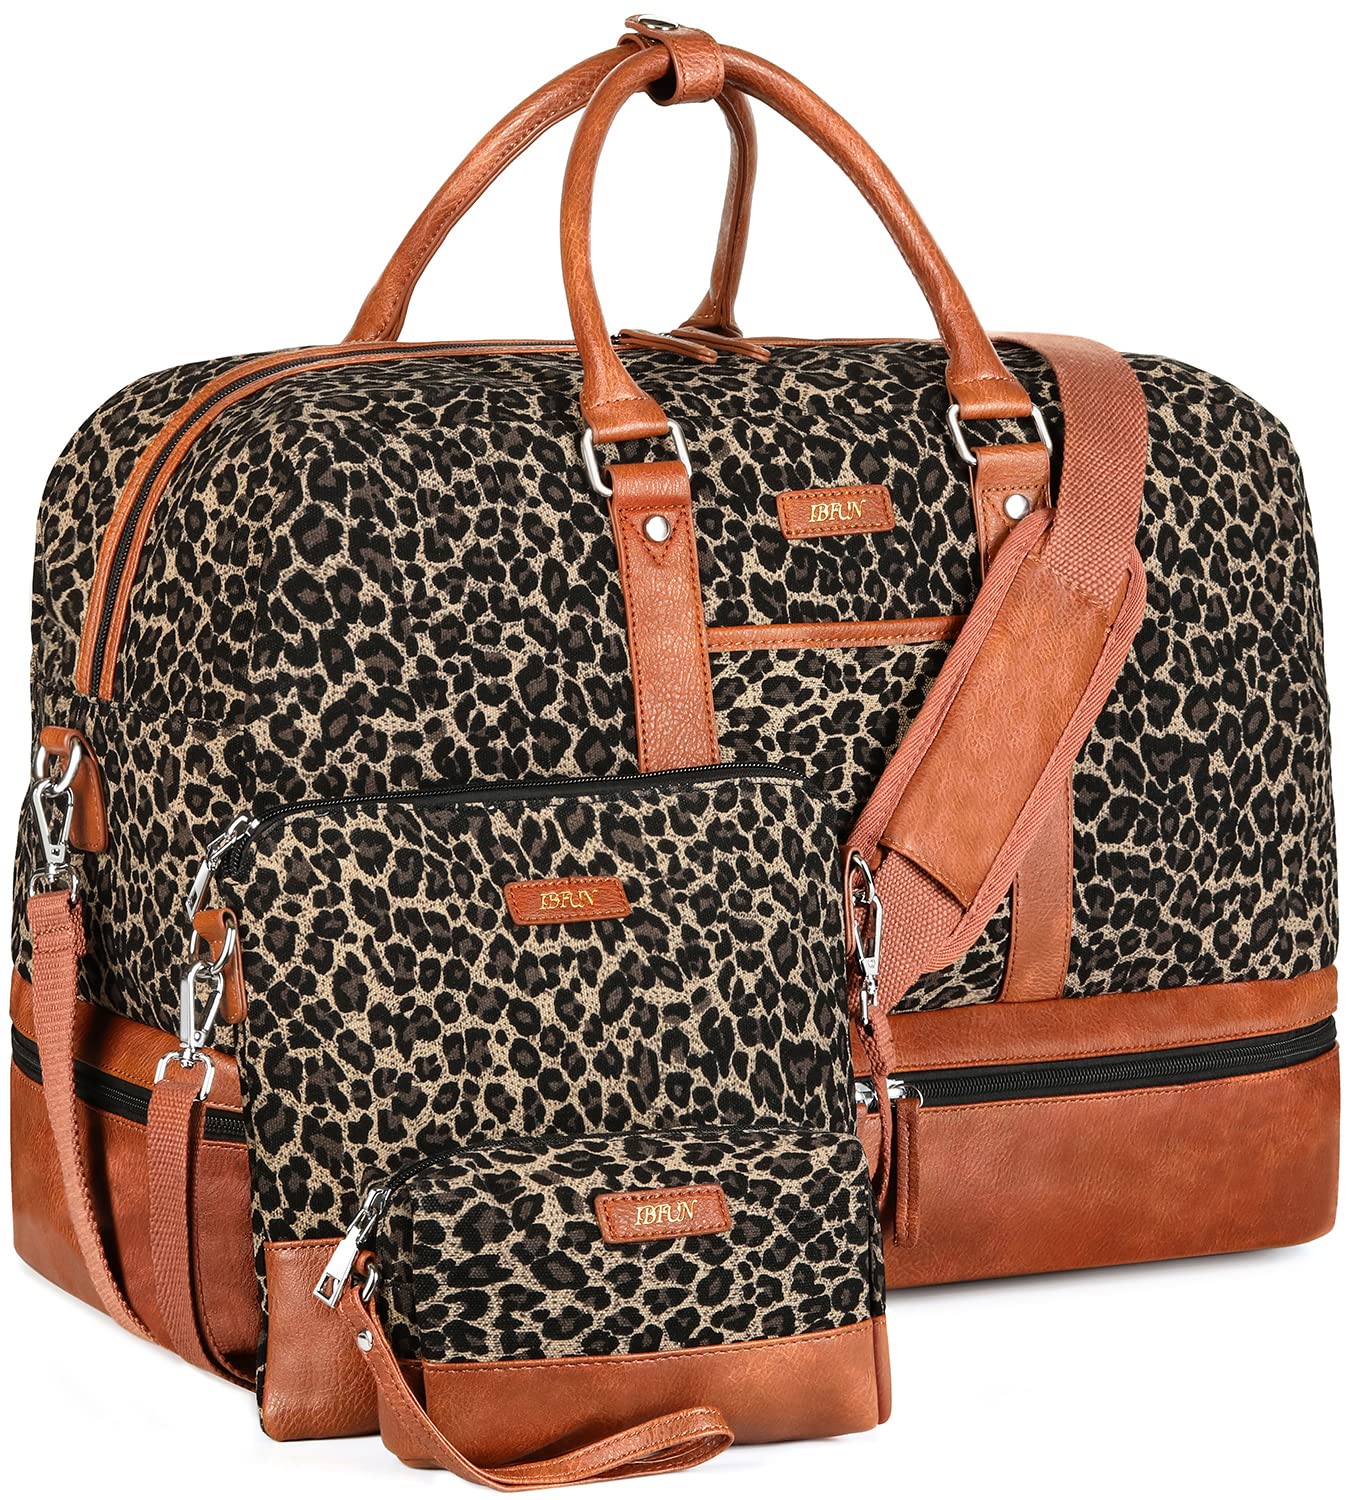 2020 Brand En And Women Large Capacity Luggage Bag Baggage Real Waterproof  Handbag Duffel Bags M4361895 From Yinwei72020, $142.14